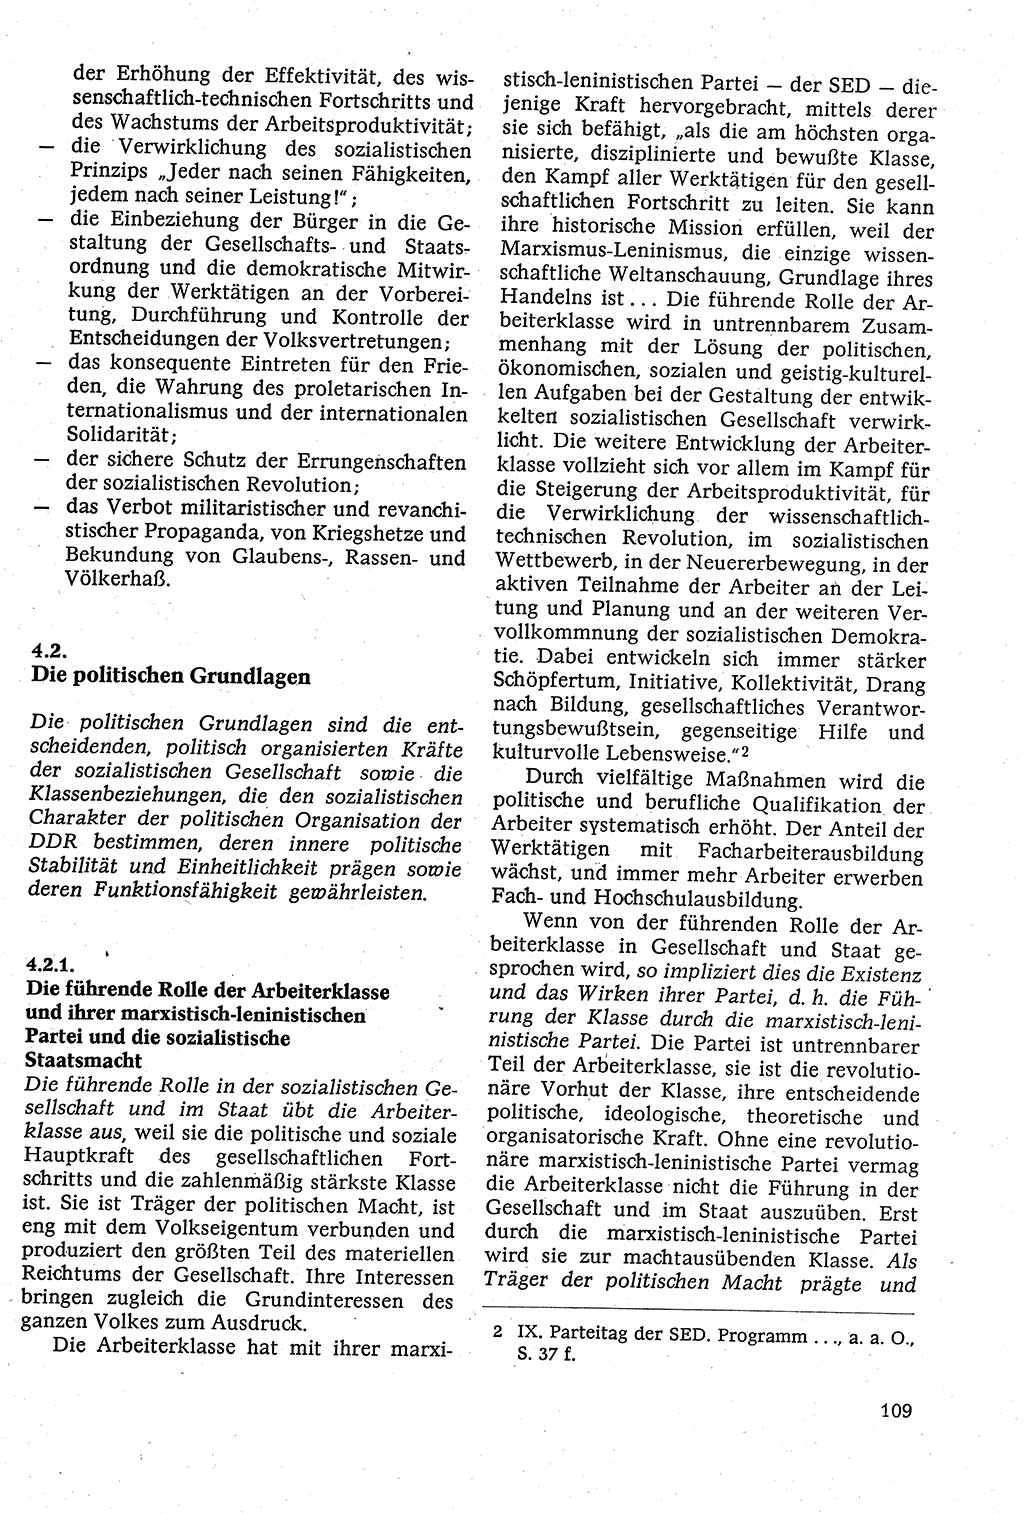 Staatsrecht der DDR [Deutsche Demokratische Republik (DDR)], Lehrbuch 1984, Seite 109 (St.-R. DDR Lb. 1984, S. 109)